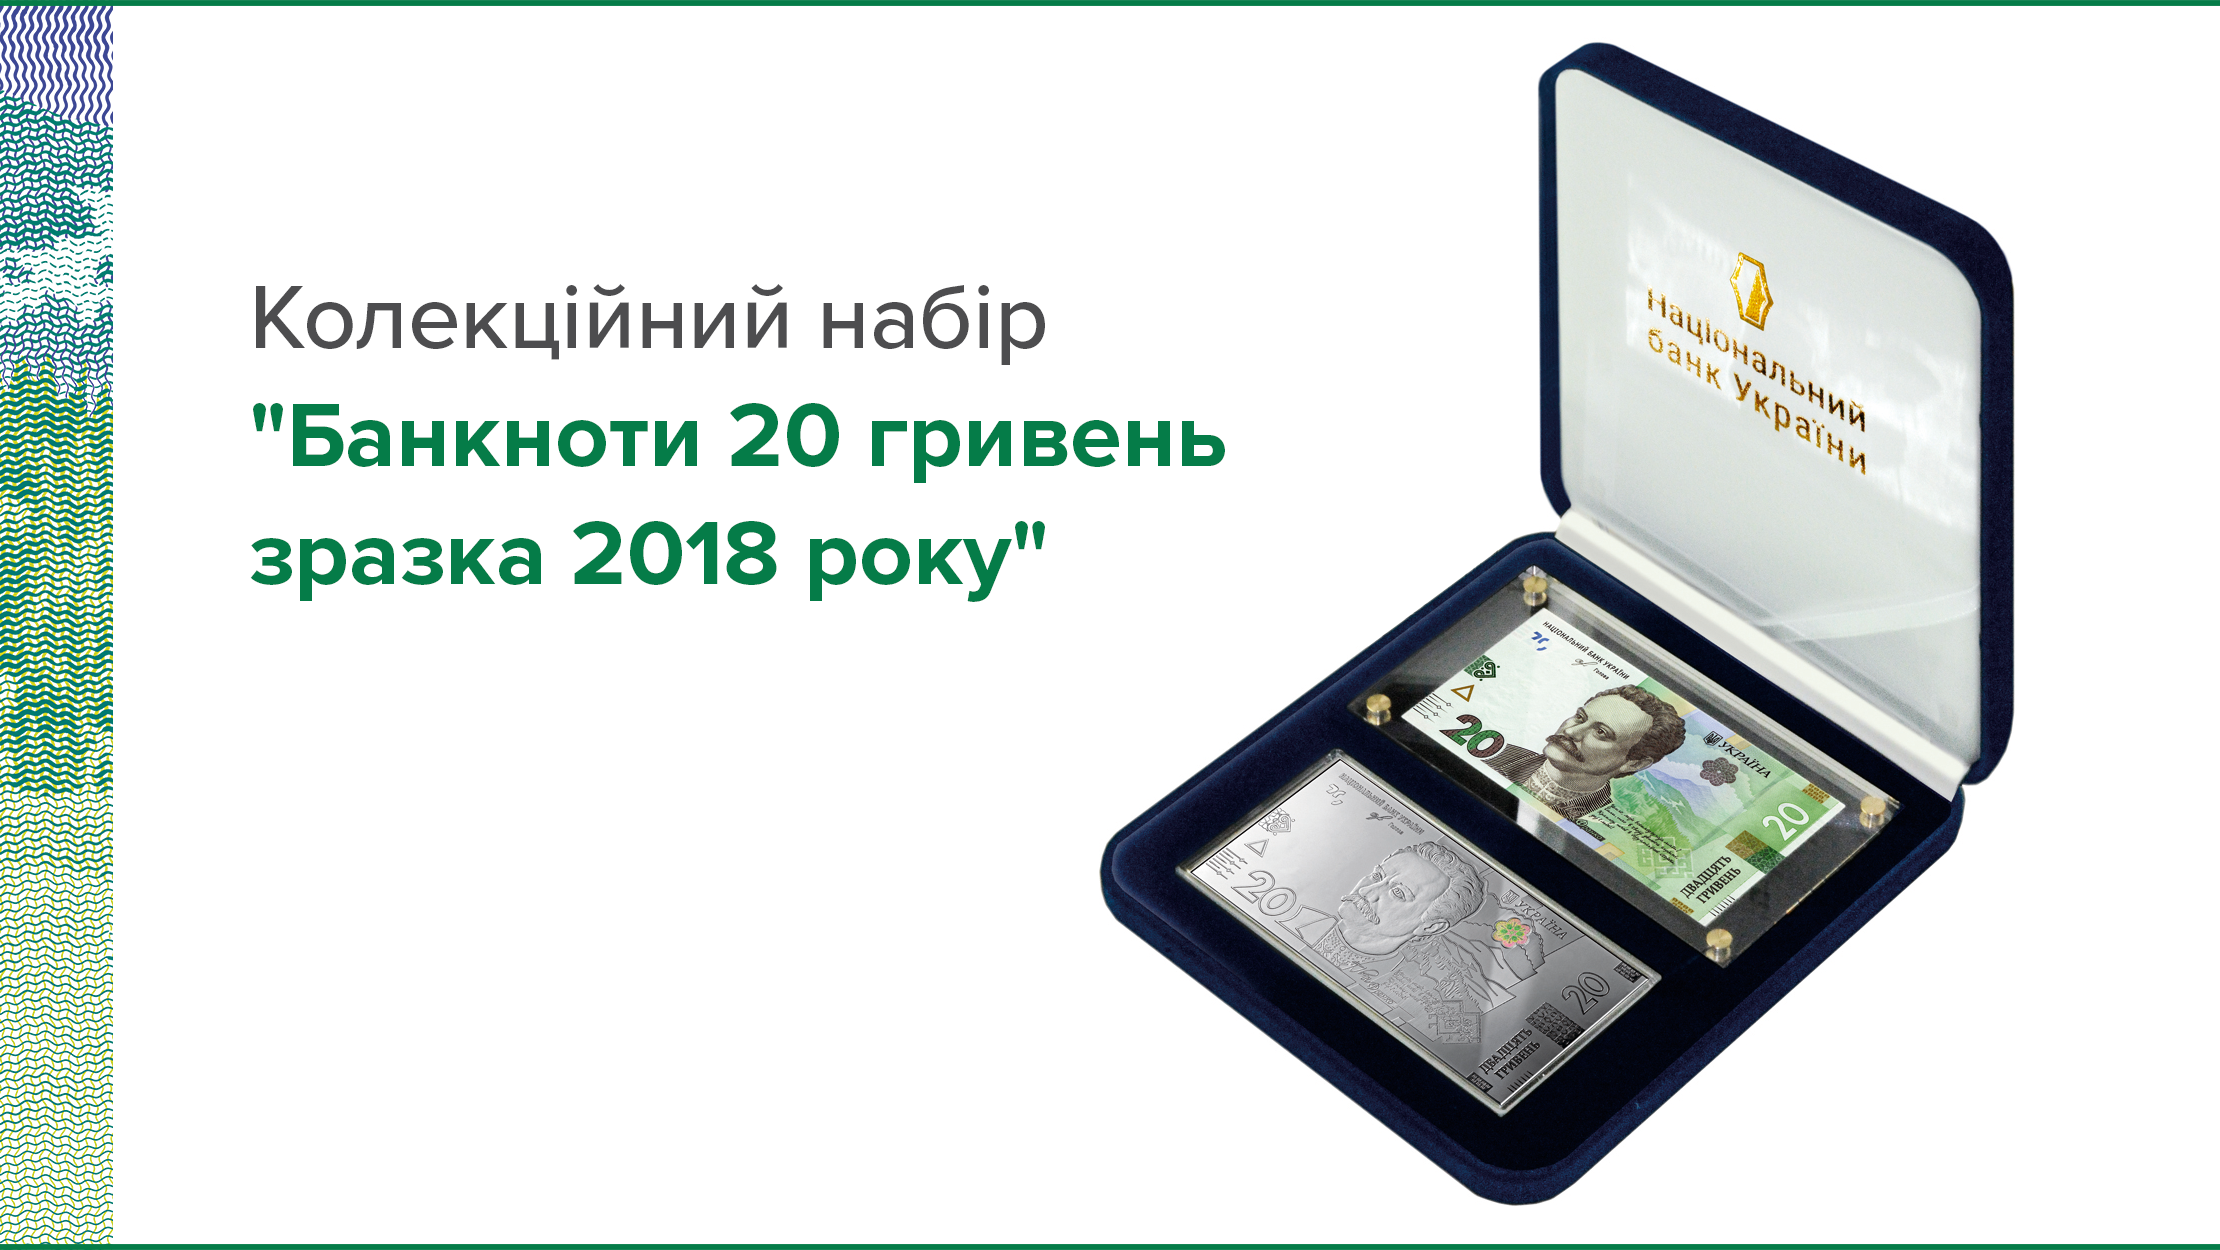 Національний банк випустить колекційний набір "Банкноти 20 гривень зразка 2018 року"